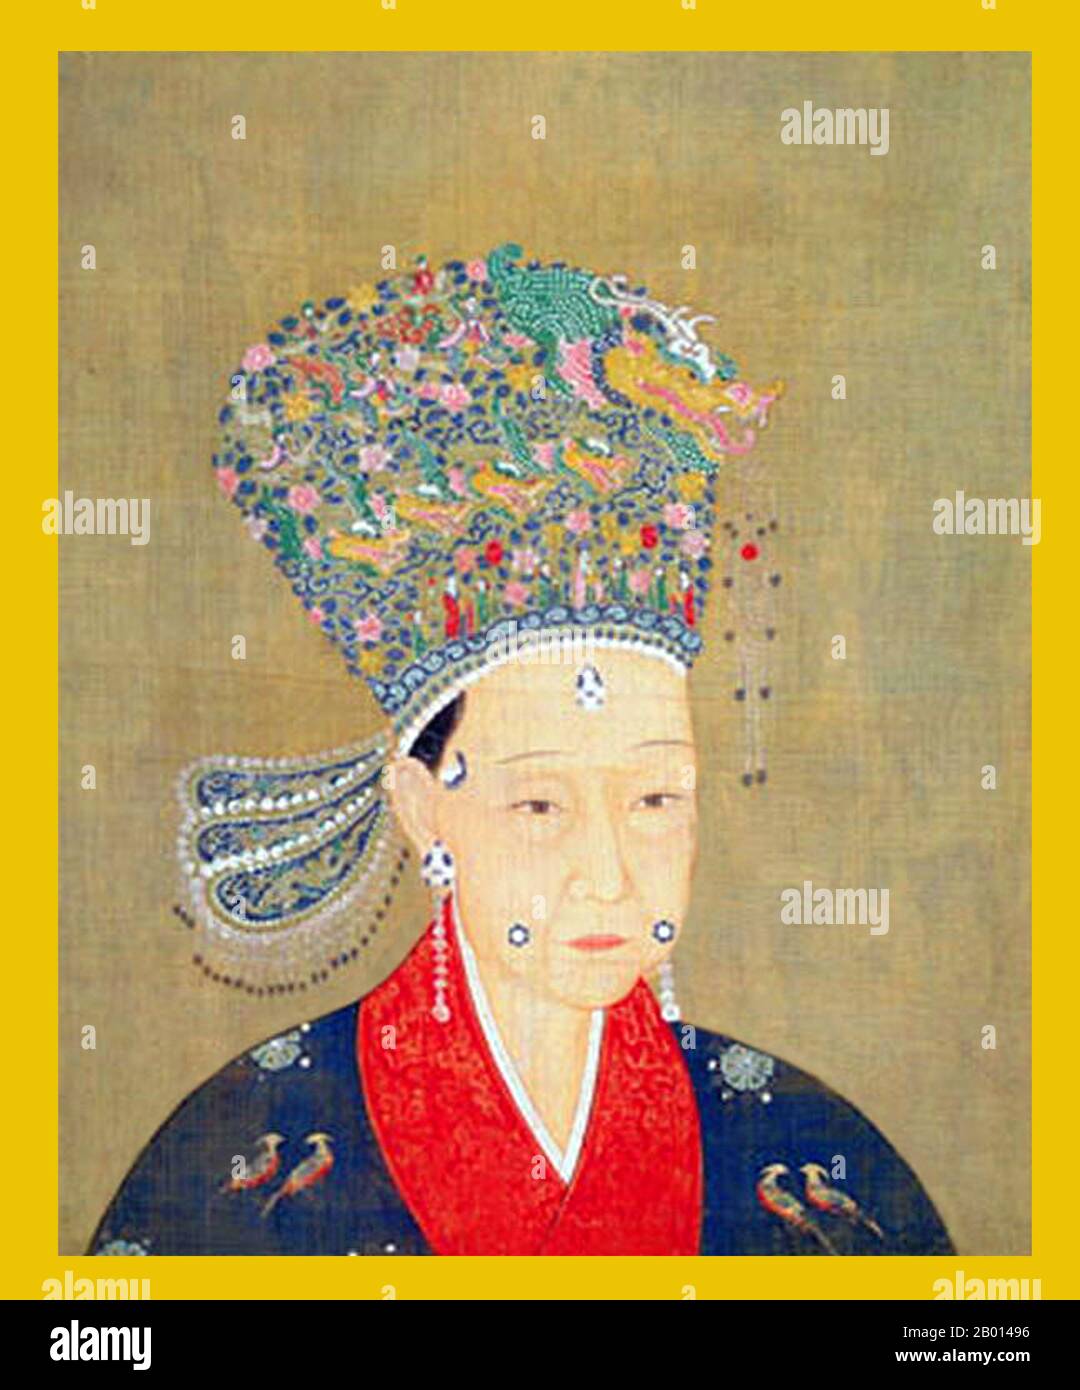 Cina: Imperatrice Xie (1135 - 13 giugno 1207), consorte dell'Imperatore Xiaozong, undicesimo dominatore della Dinastia Song e secondo dominatore della Dinastia Song Meridionale (r.1162-1189). Pittura a spirale sospesa, 1162-1207. L'imperatrice Xie, nome personale Sufang e noto anche come Chengsu, fu consorte all'Imperatore Xiaozong. Inizialmente serviva come concubina dell'Imperatore Xiaozong, fu nominata imperatrice dopo la morte dell'Imperatrice Xia, la seconda imperatrice dell'Imperatore Xiaozong. Non aveva figli sopravvissuti con l'imperatore, e andò in pensione con lui quando abdicò nel 1189. Foto Stock